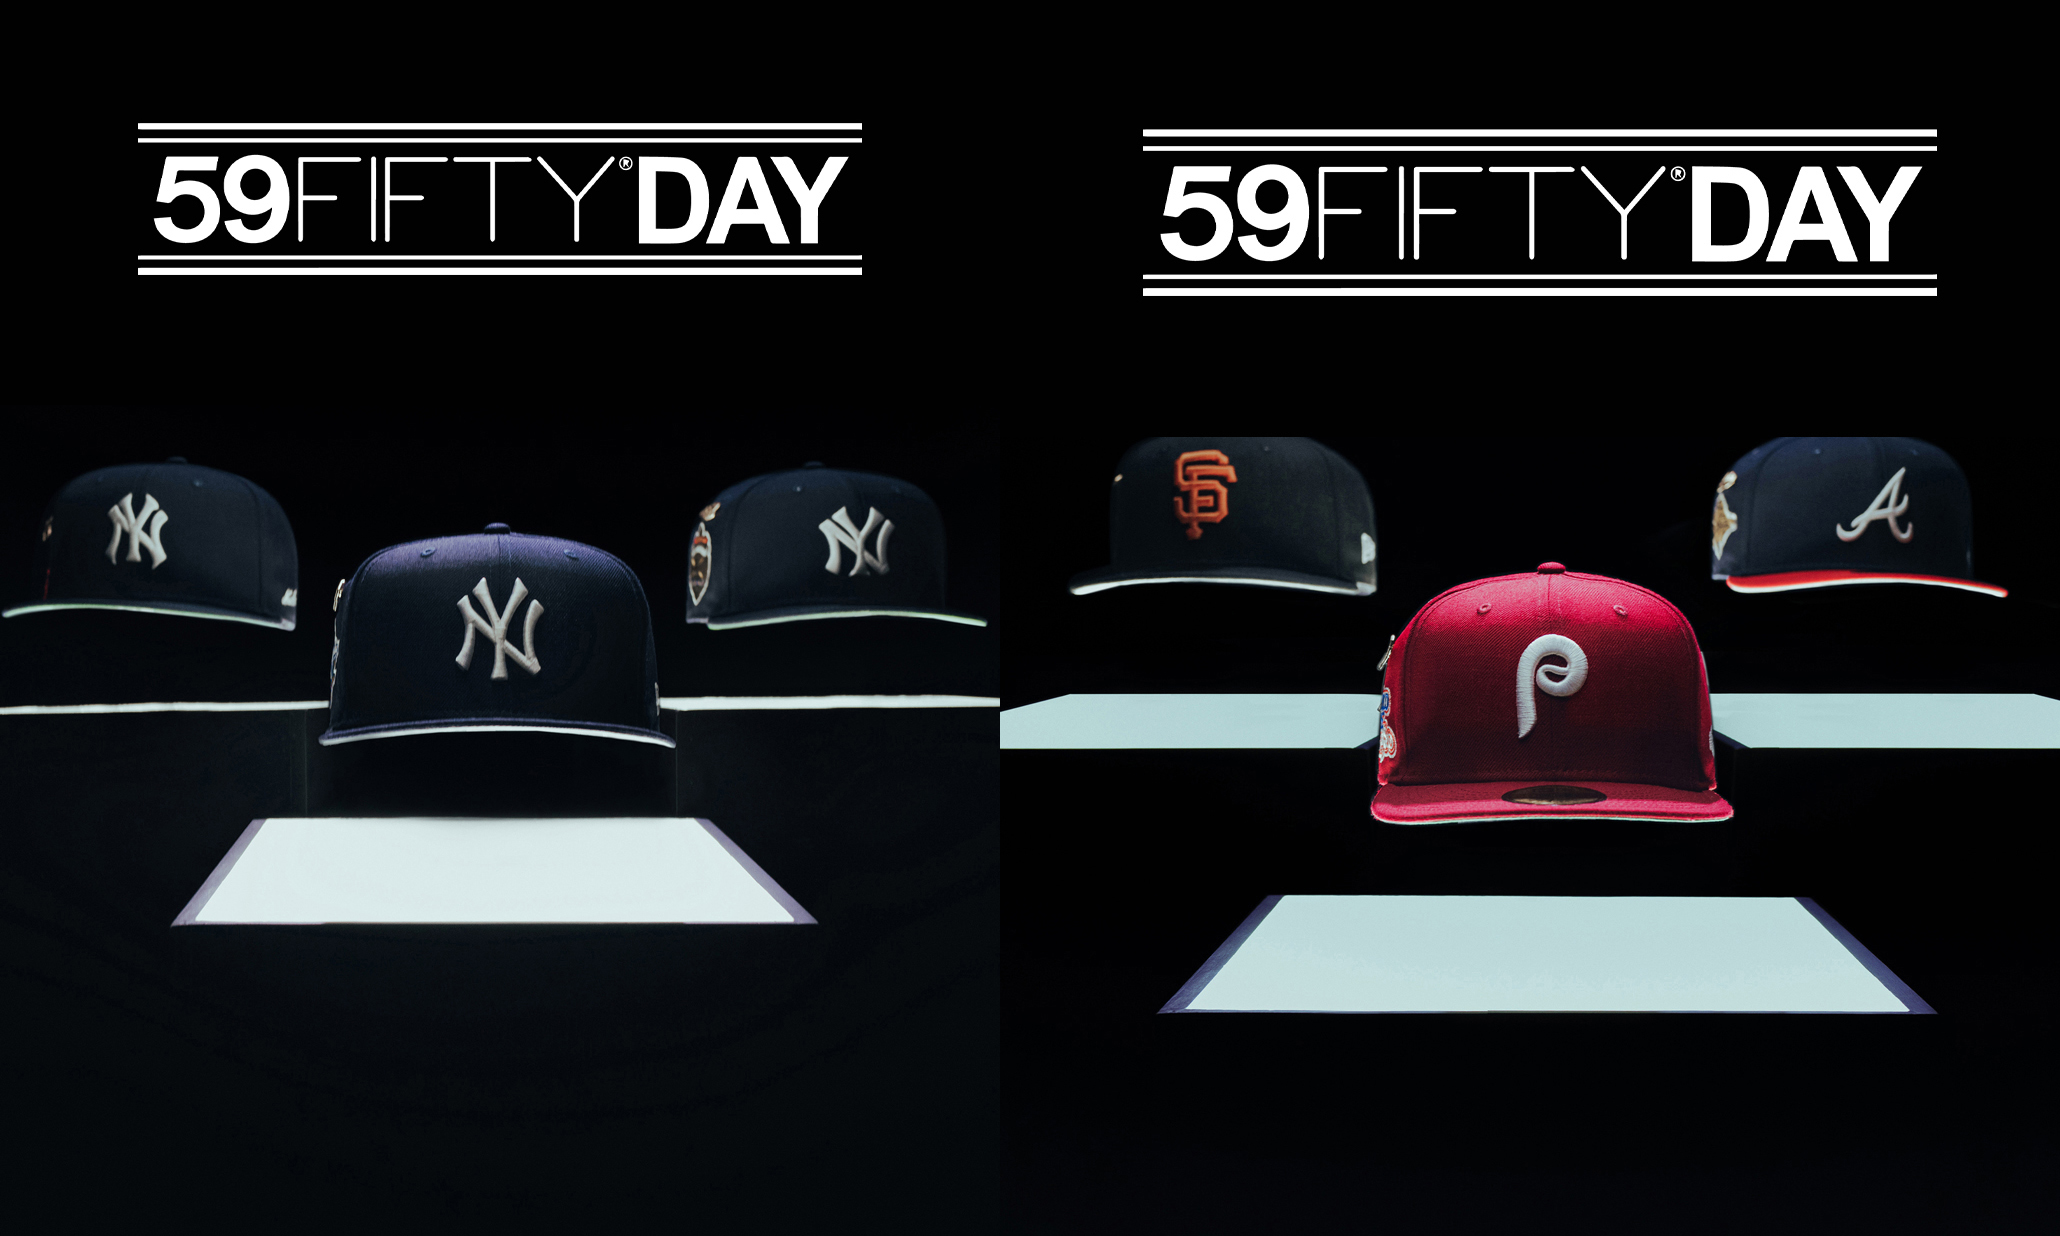 New Era 为「59FIFTY DAY」推出全新帽款